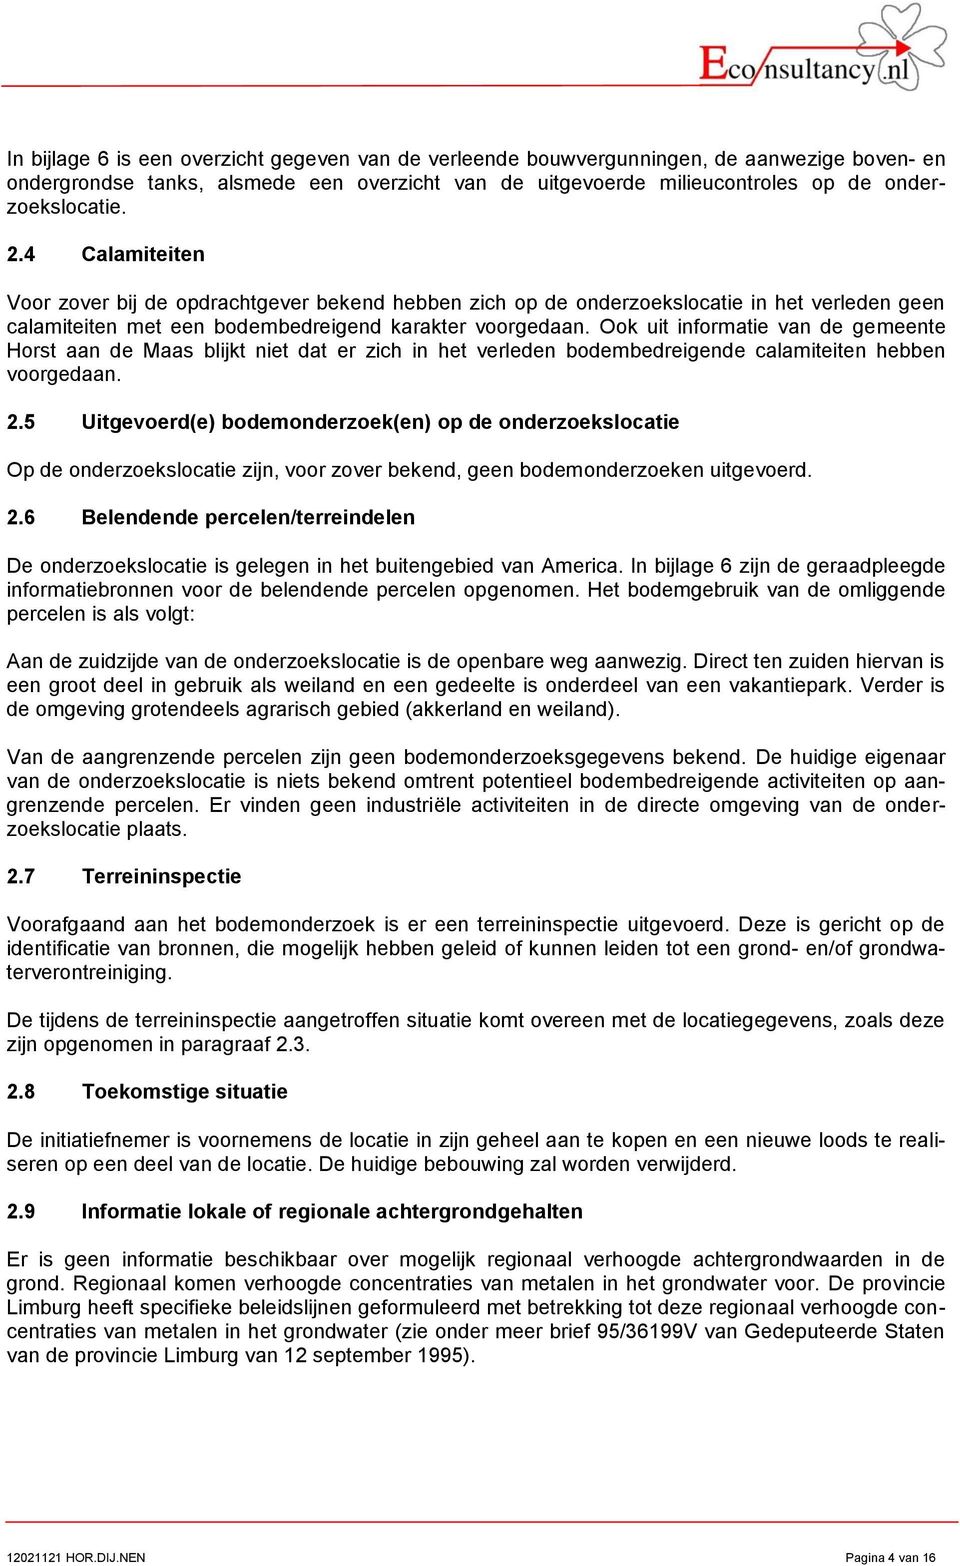 Ook uit informatie van de gemeente Horst aan de Maas blijkt niet dat er zich in het verleden bodembedreigende calamiteiten hebben voorgedaan. 2.